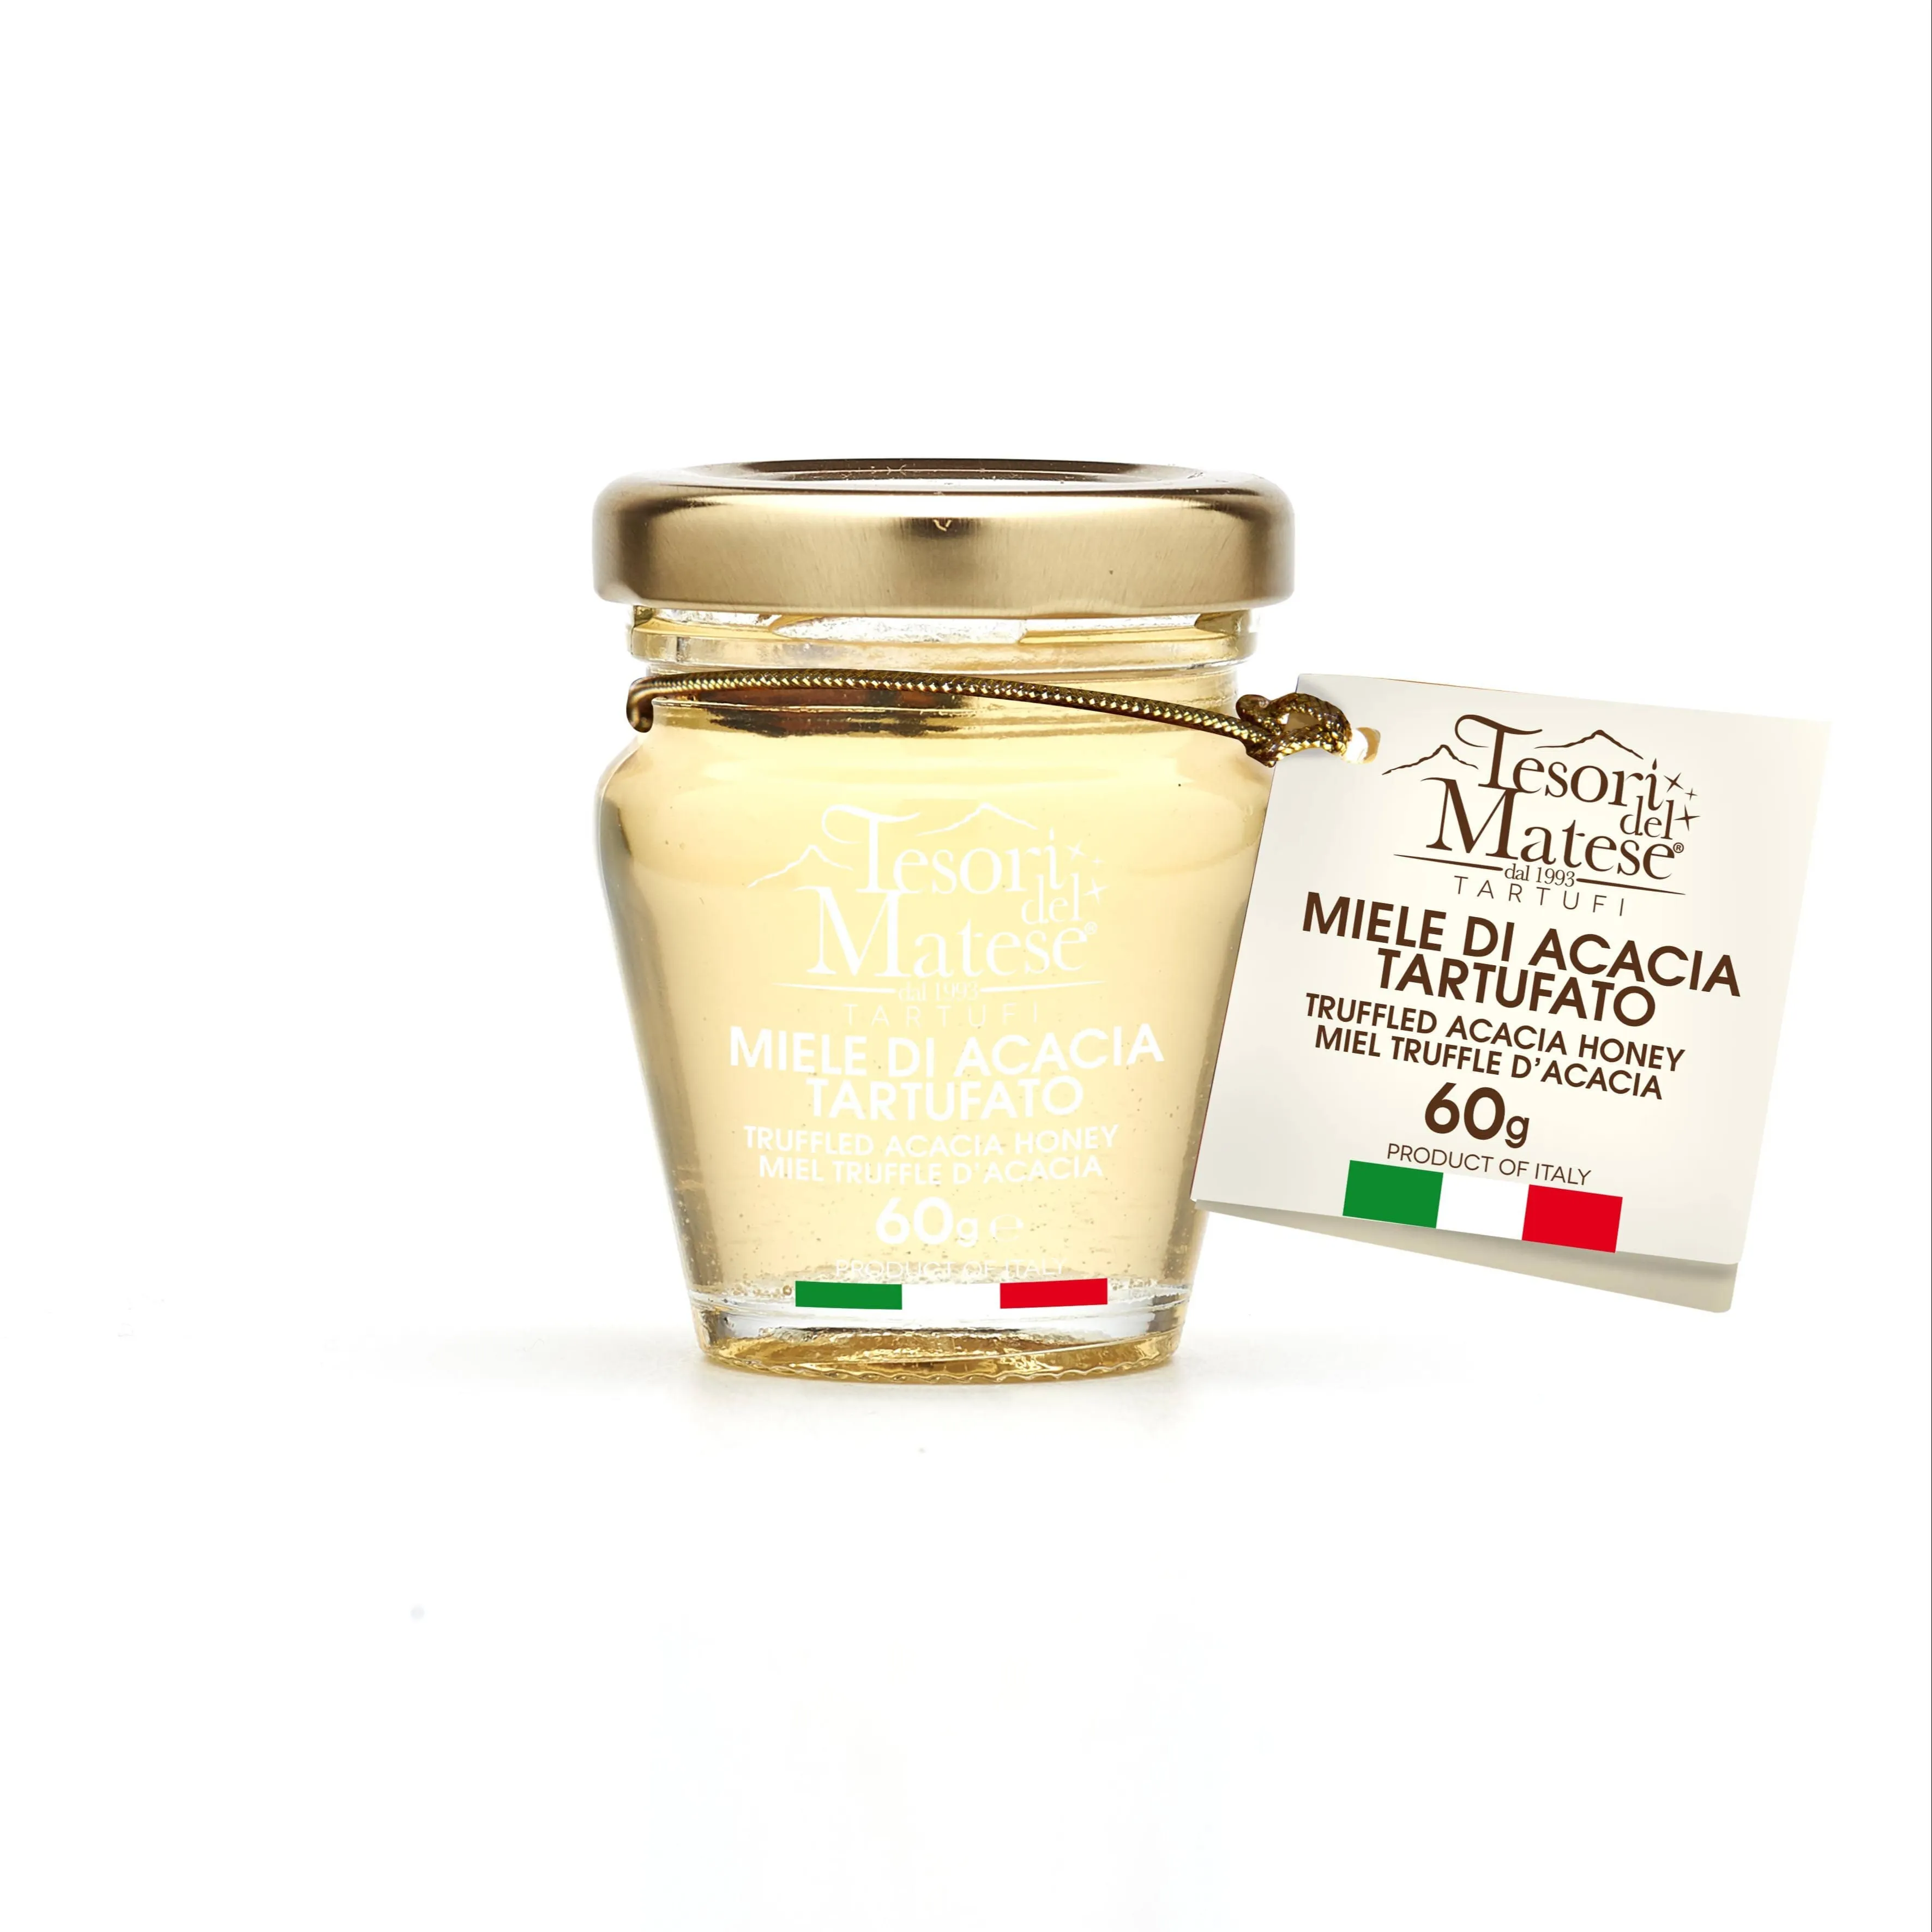 Italiano de alta qualidade Trufa Acacia Honey 60g para enriquecer as suas receitas com um sabor único para exportação